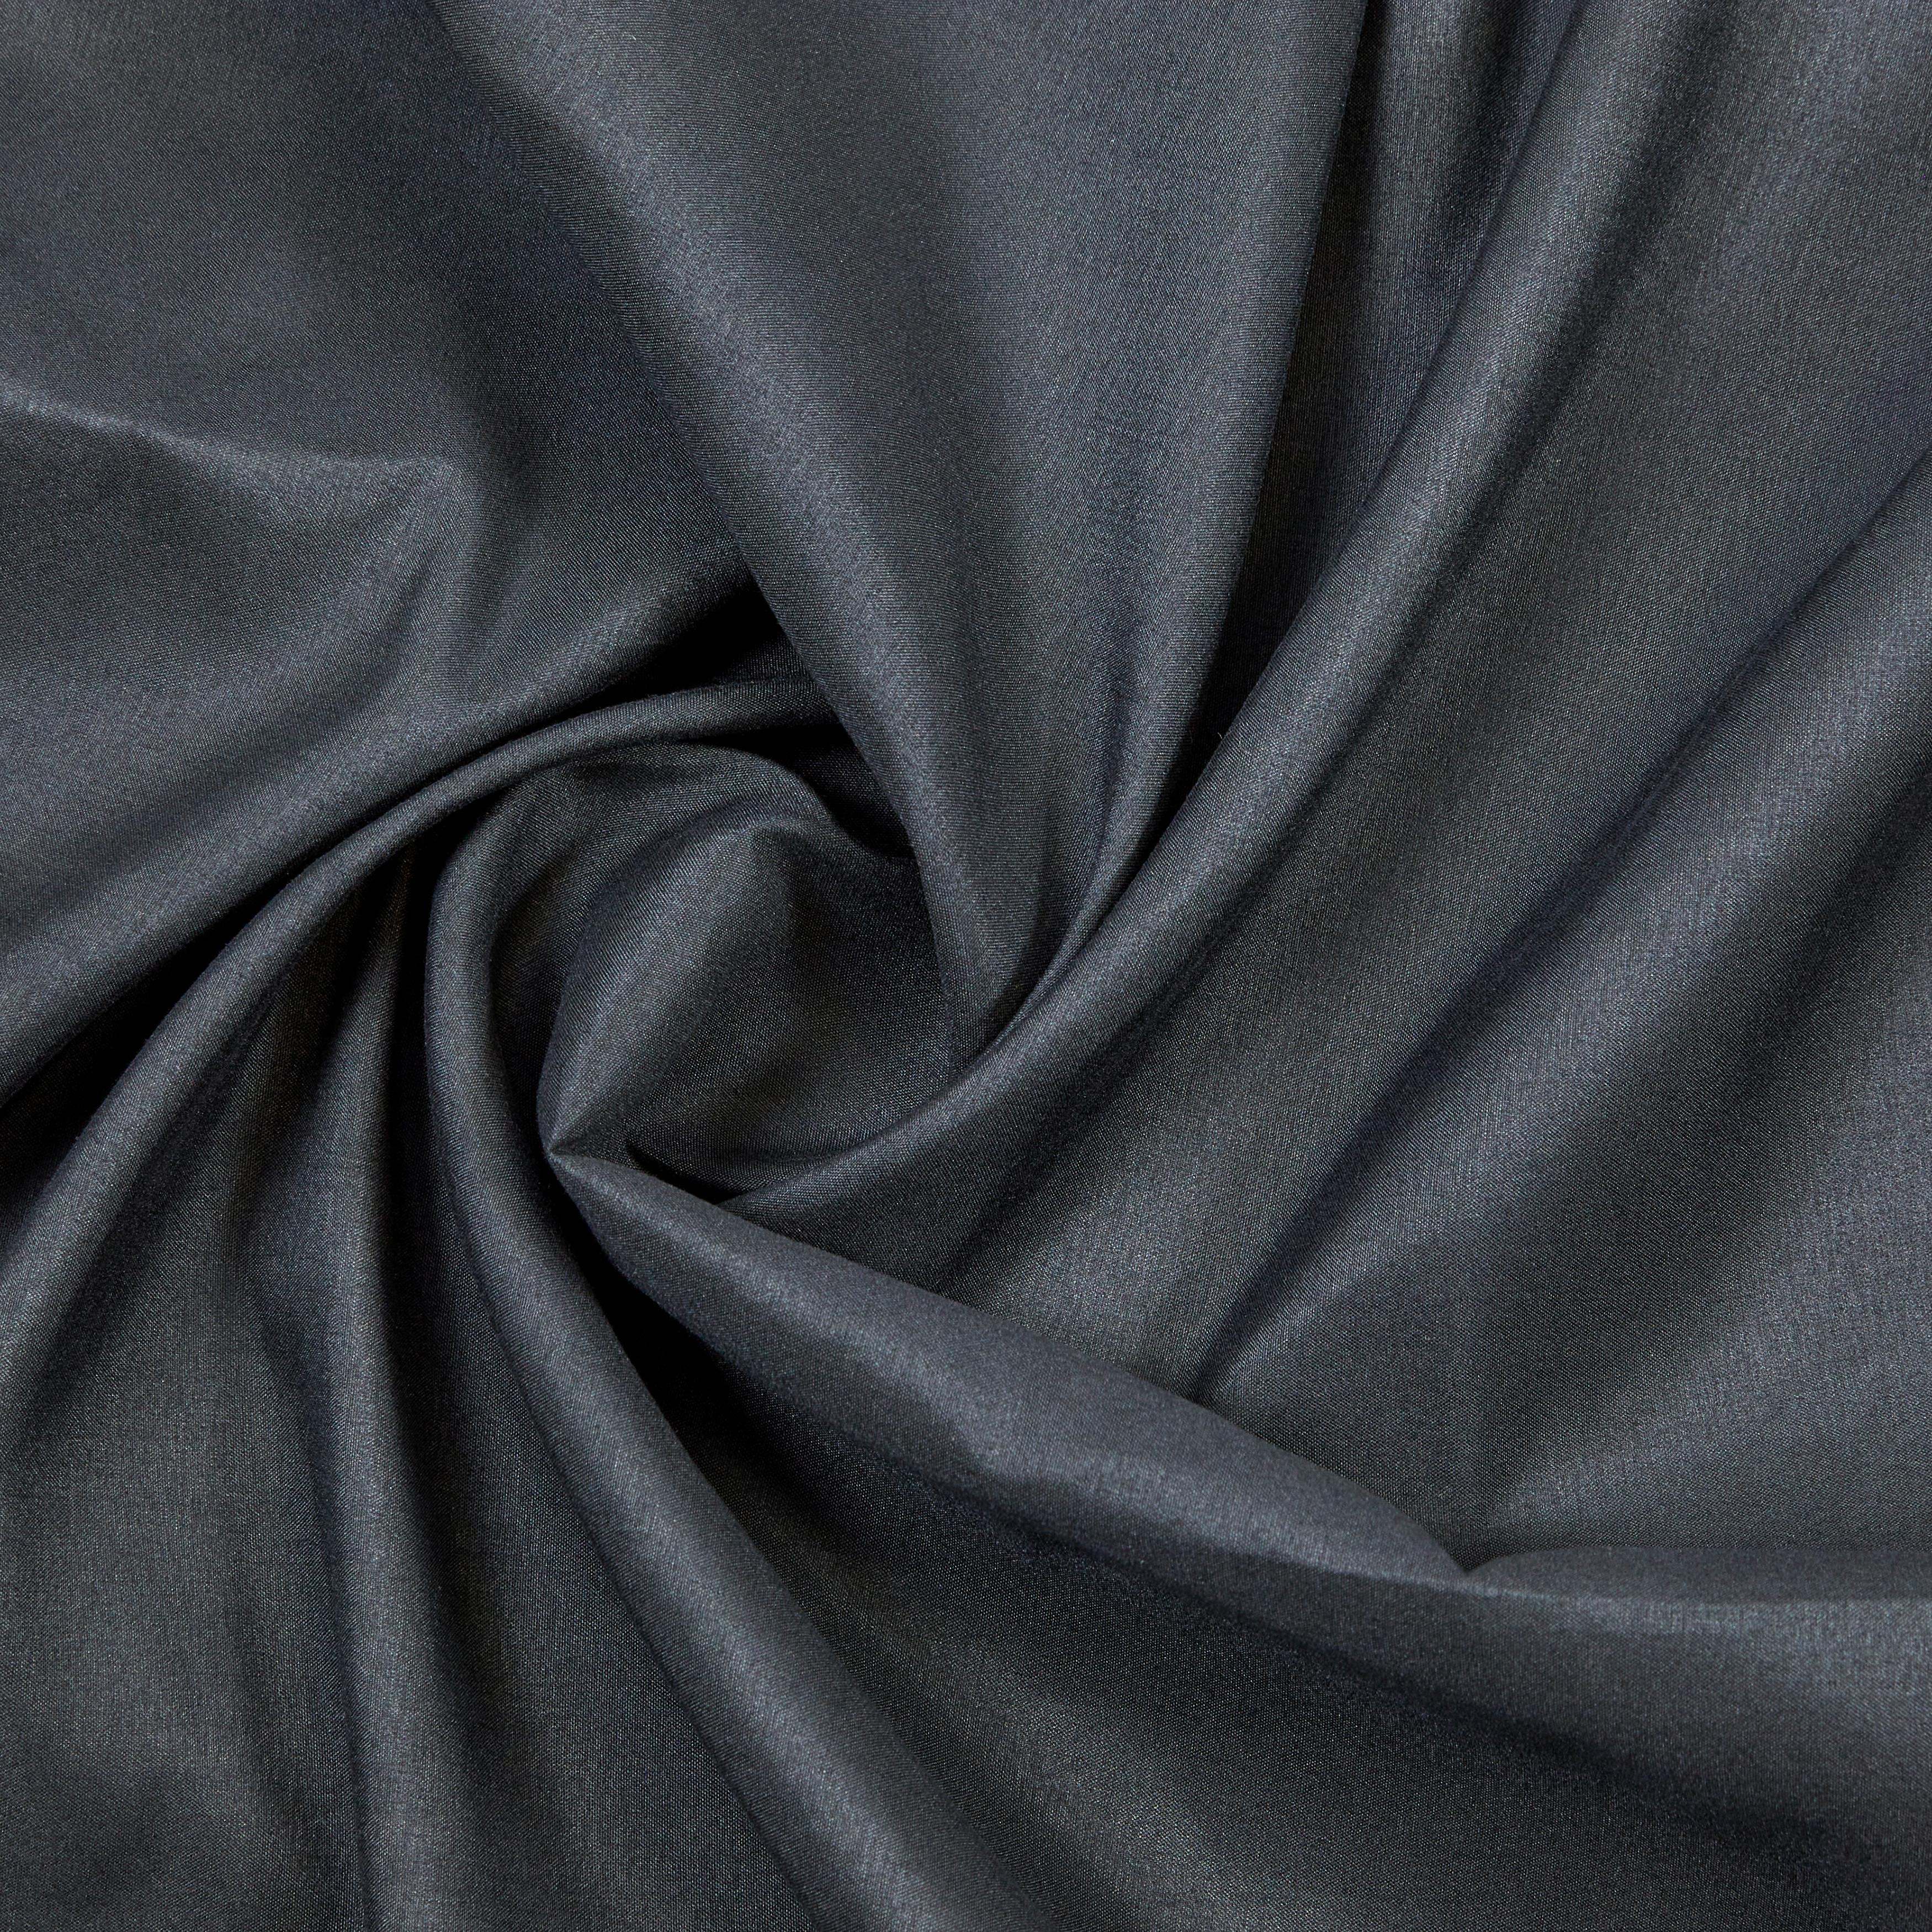 Készfüggöny Abby 140/235 - Fekete, konvencionális, Textil (140/235cm) - Modern Living